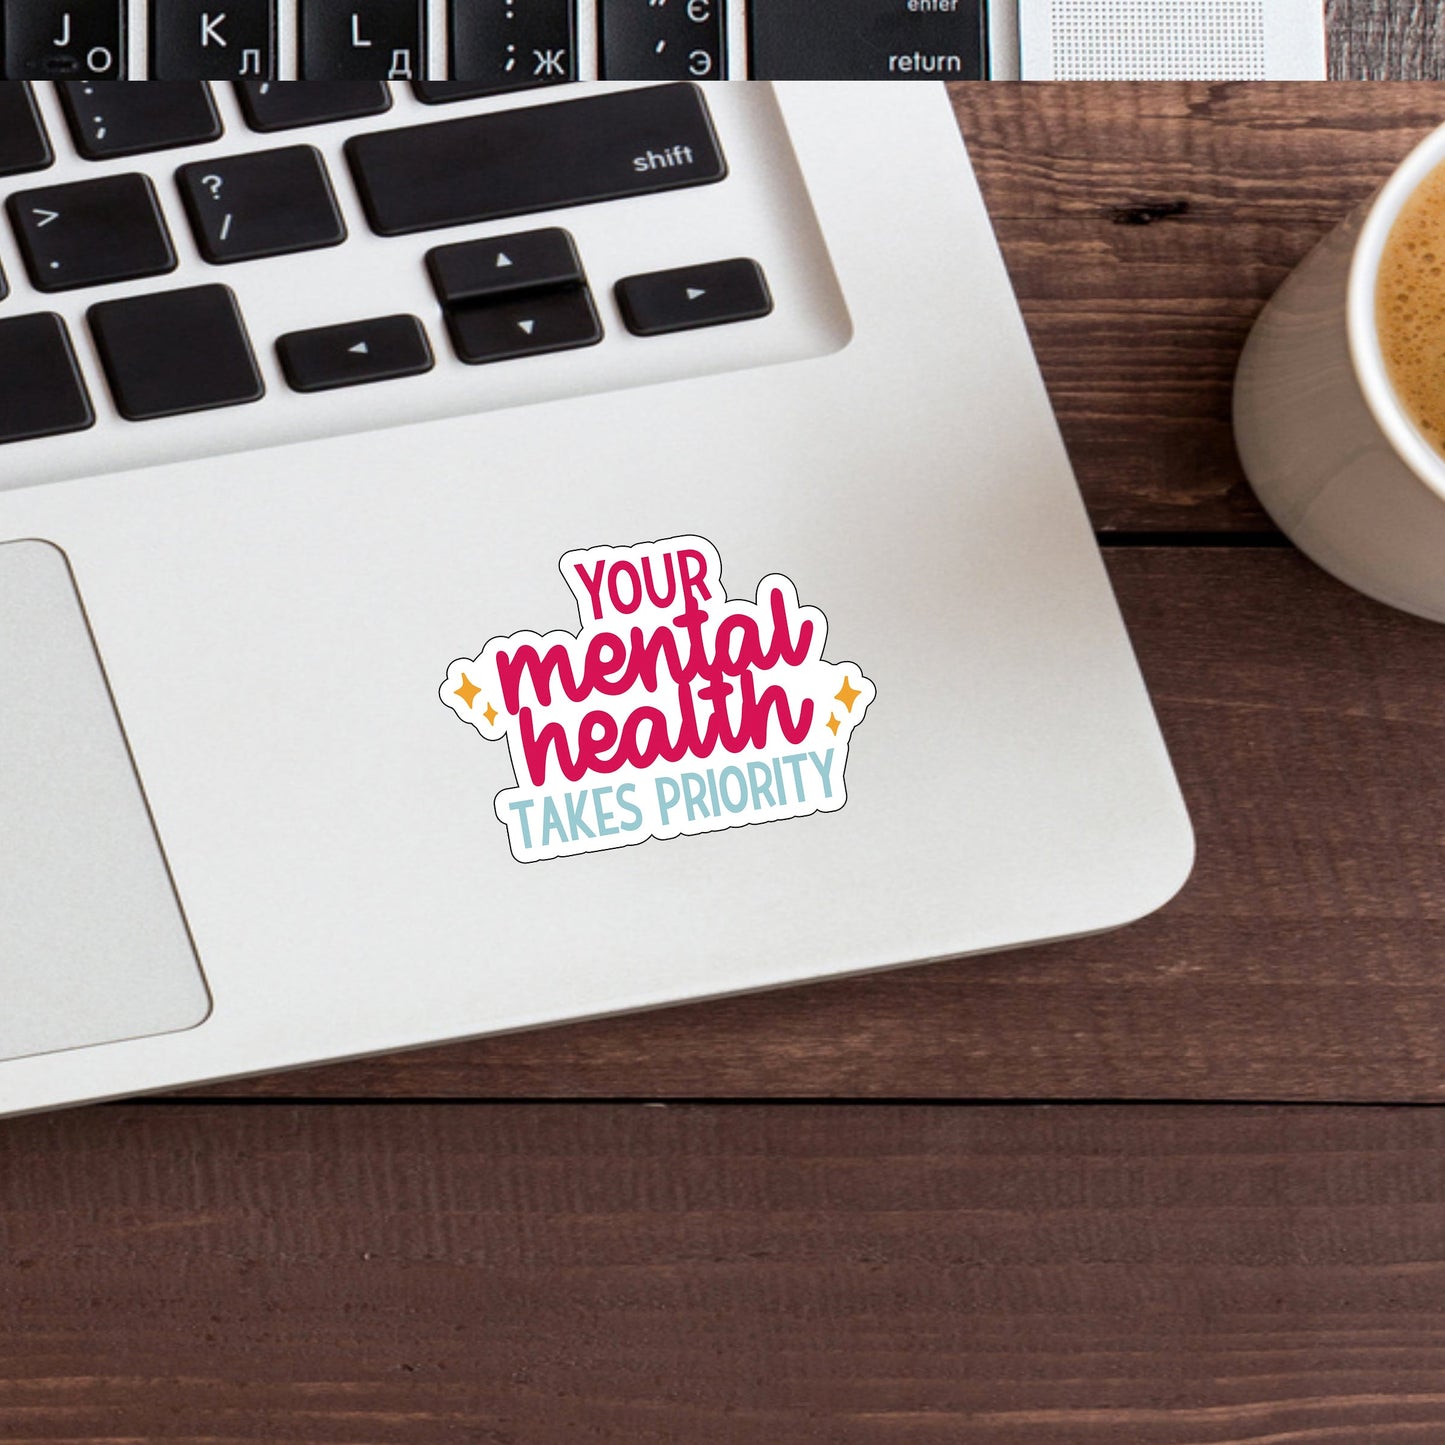 Your mental health takes priority  Sticker,  Vinyl sticker, laptop sticker, Tablet sticker